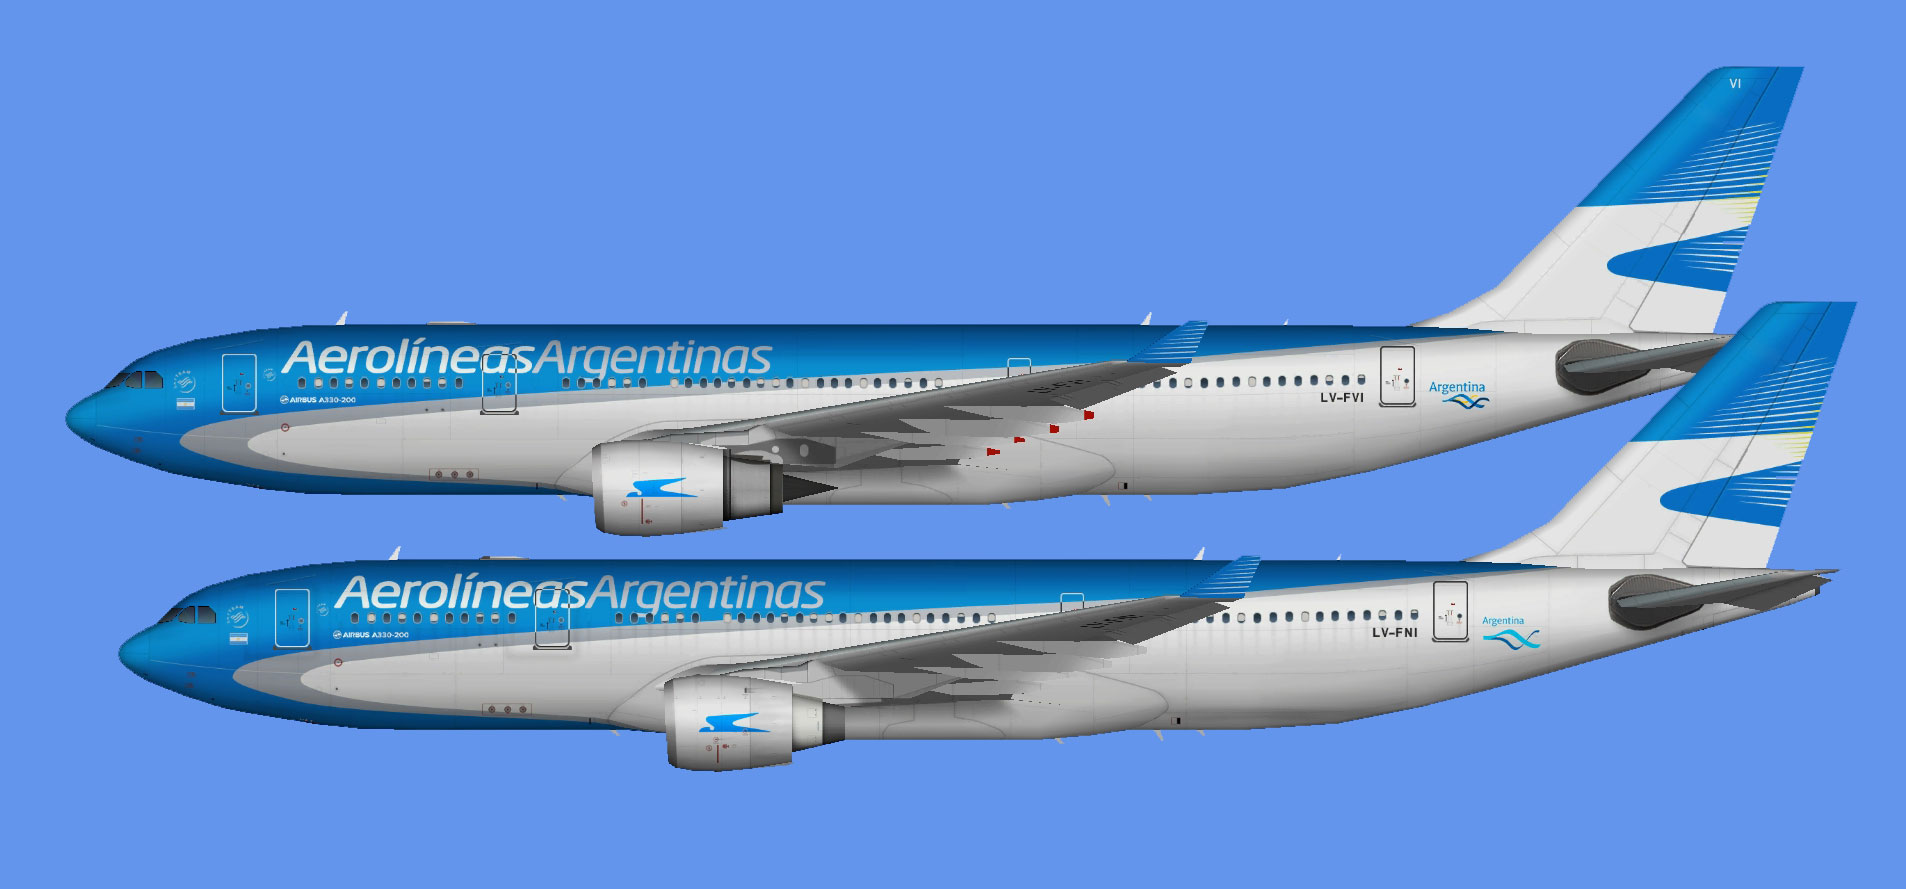 Aerolineas Argentinas A330-200 fleet (TFS)